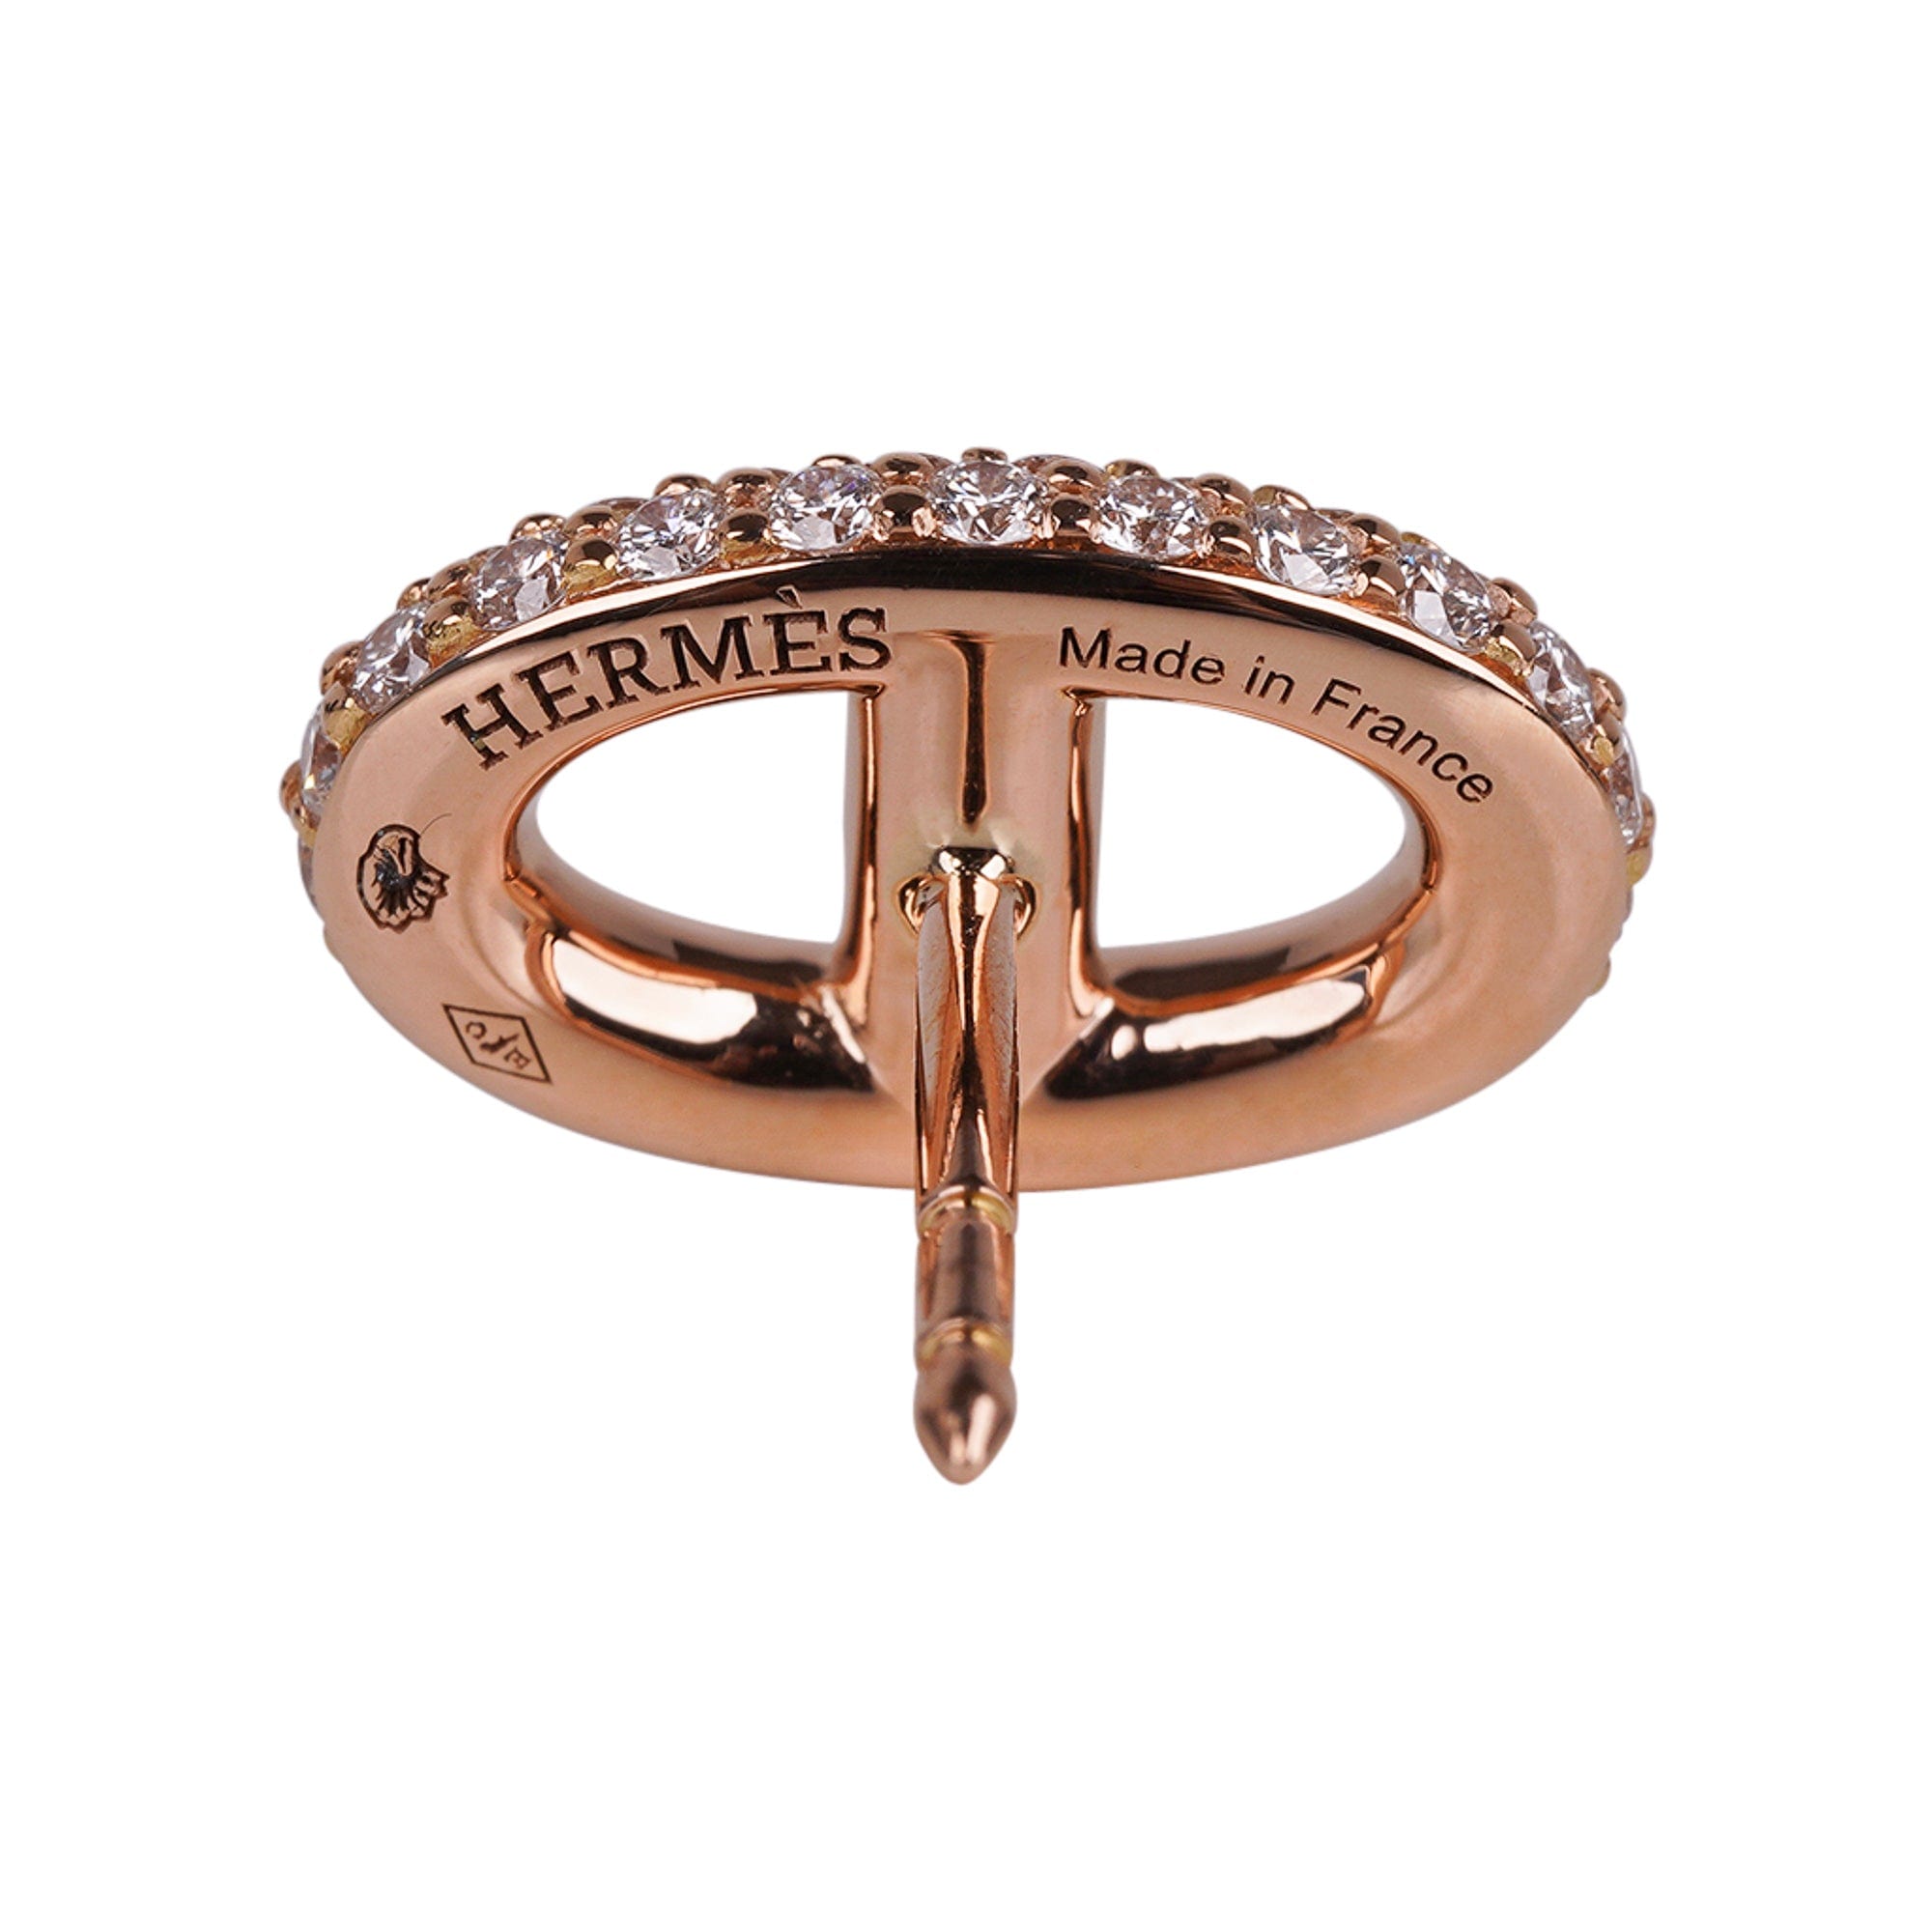 Hermes 18K Gold Ring Scarf Holder